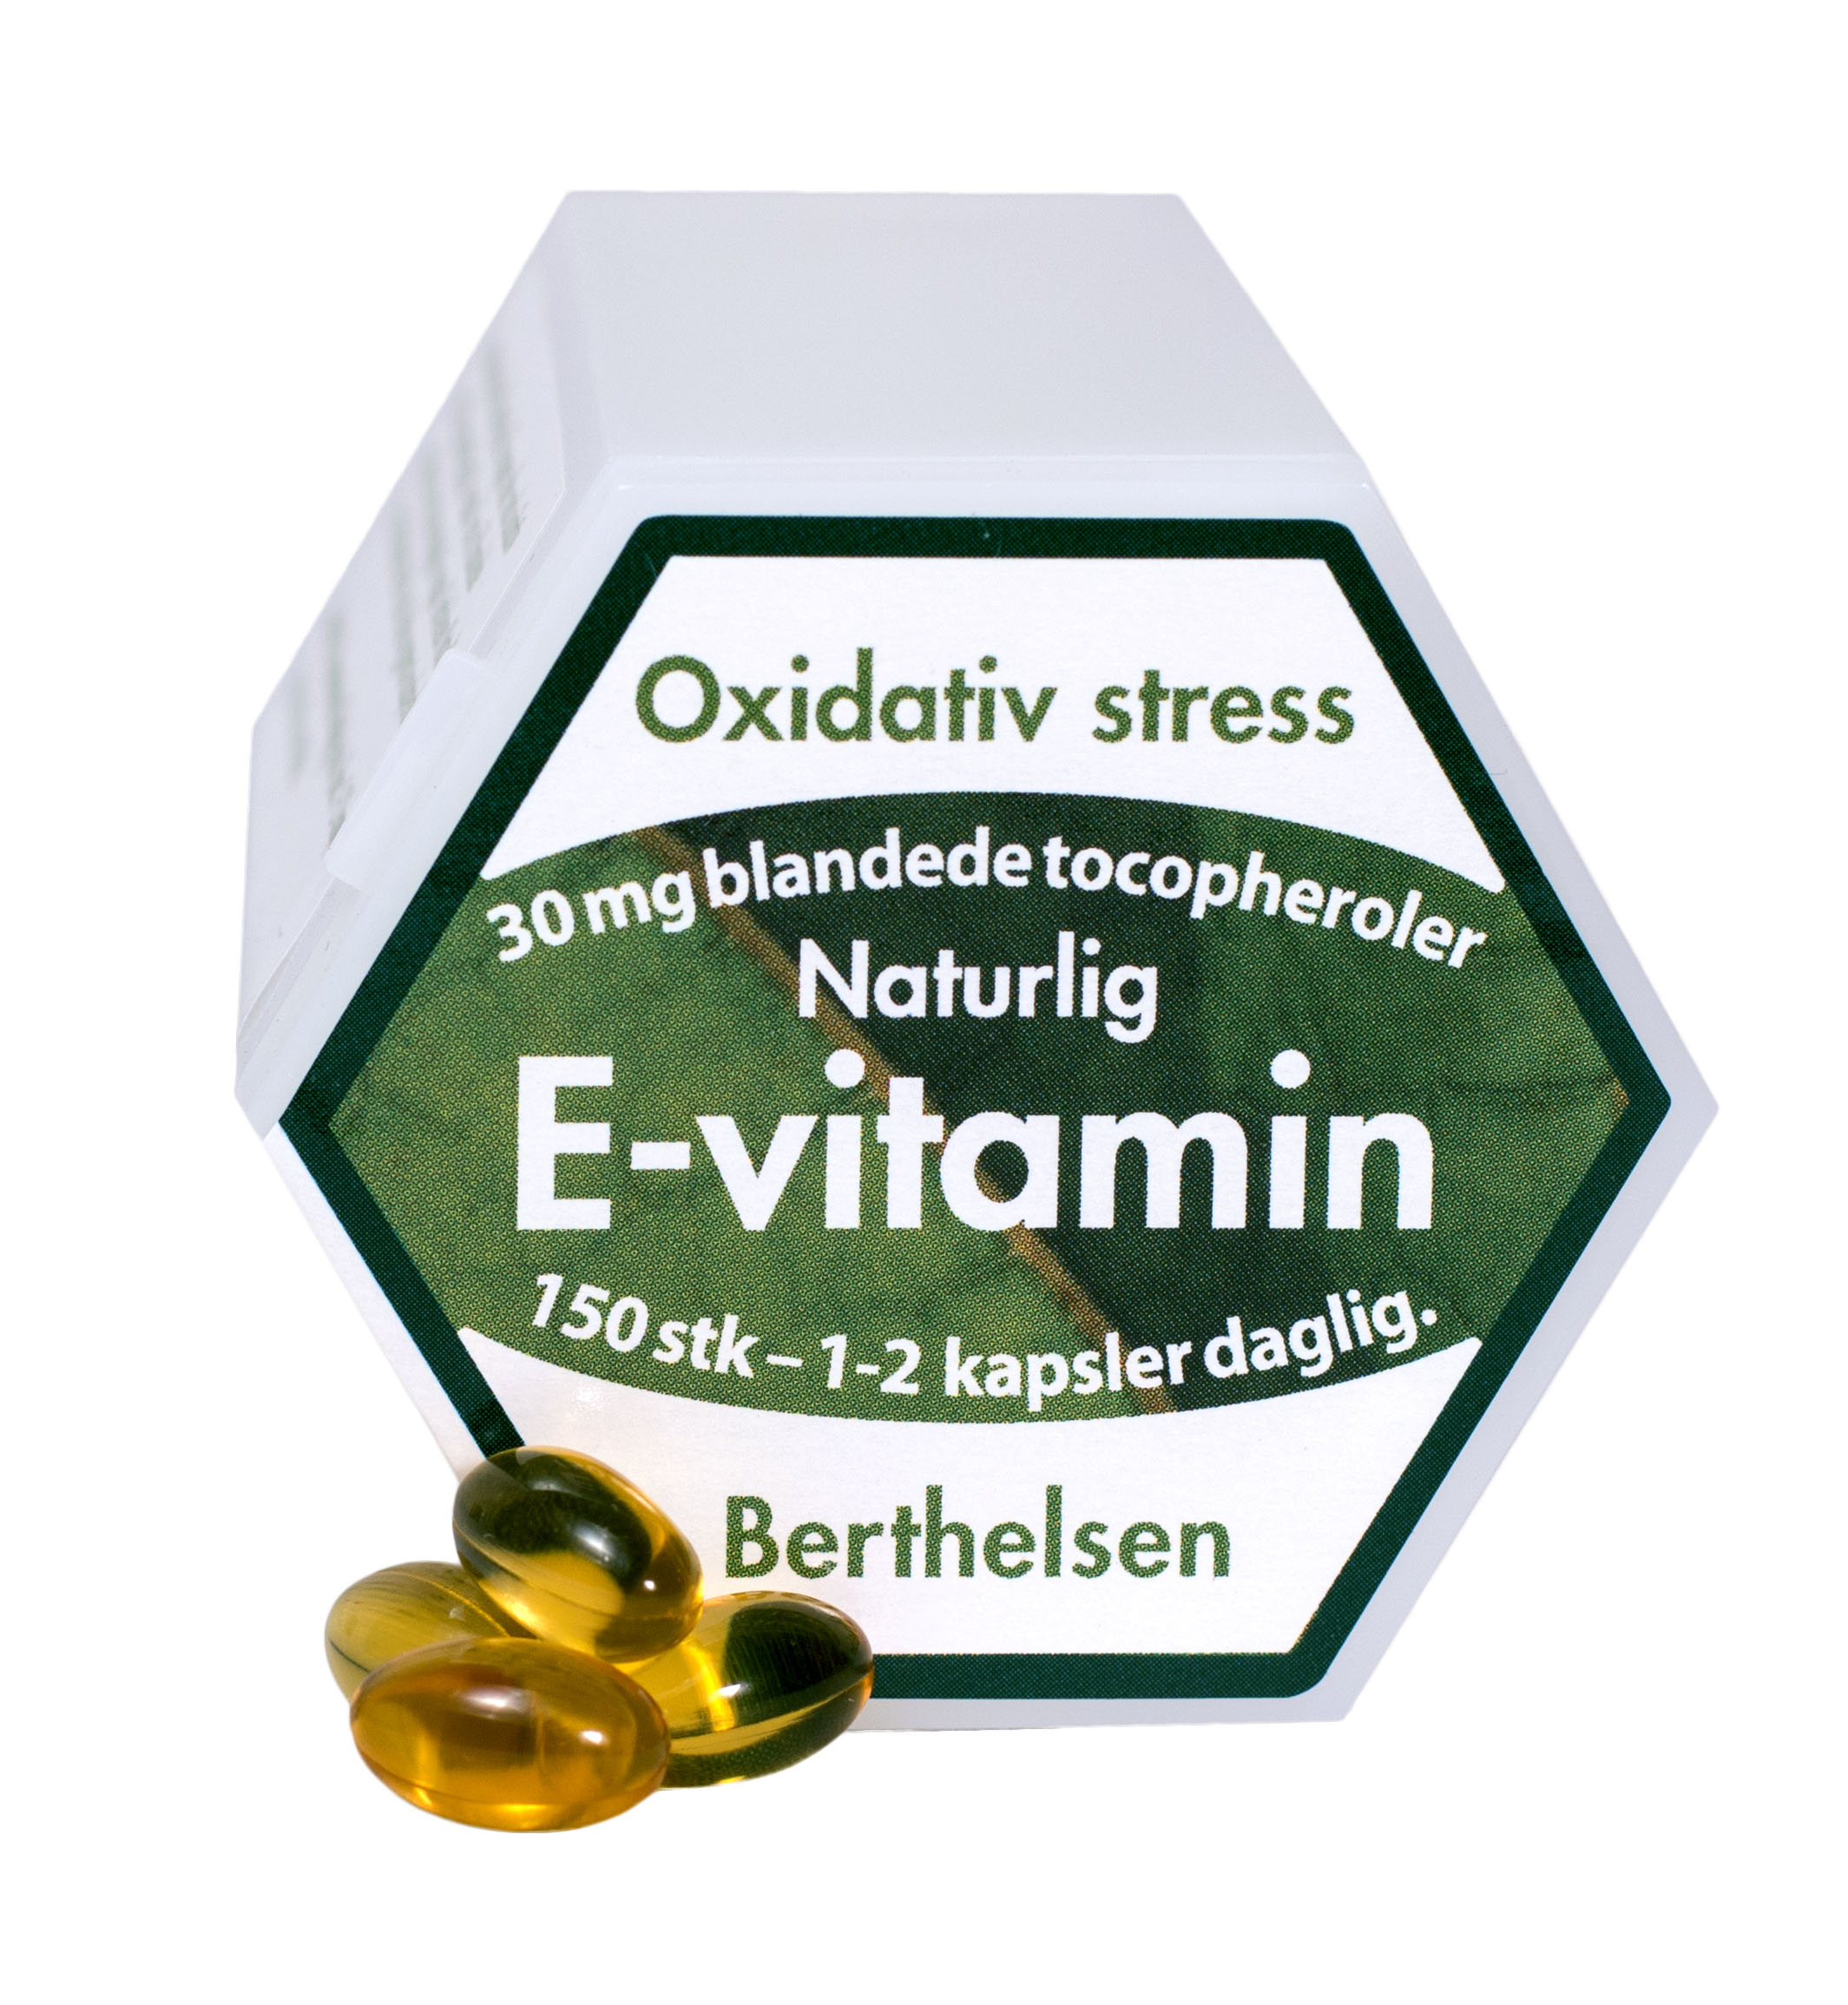 Berthelsen E-vitamin 30 mg 150 tab. DATOVARE 07/2024